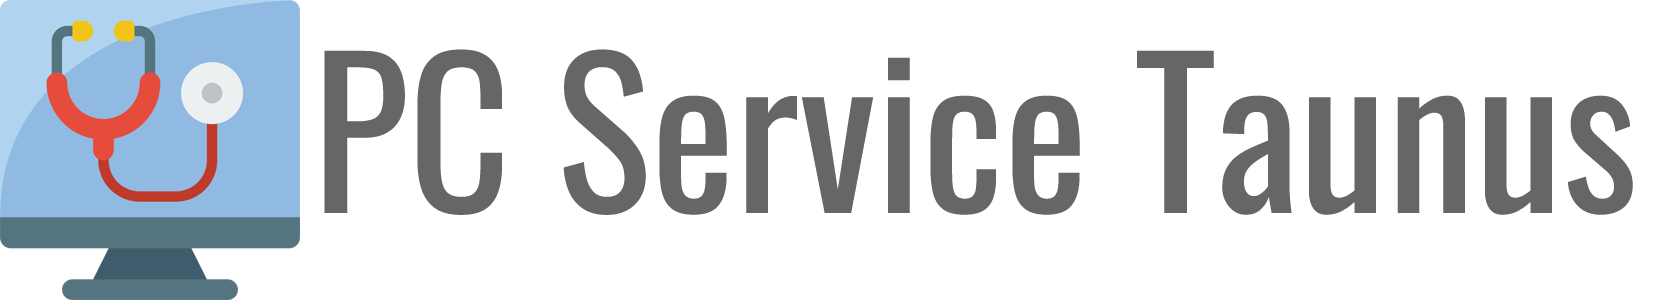 Logo PC Service Taunus